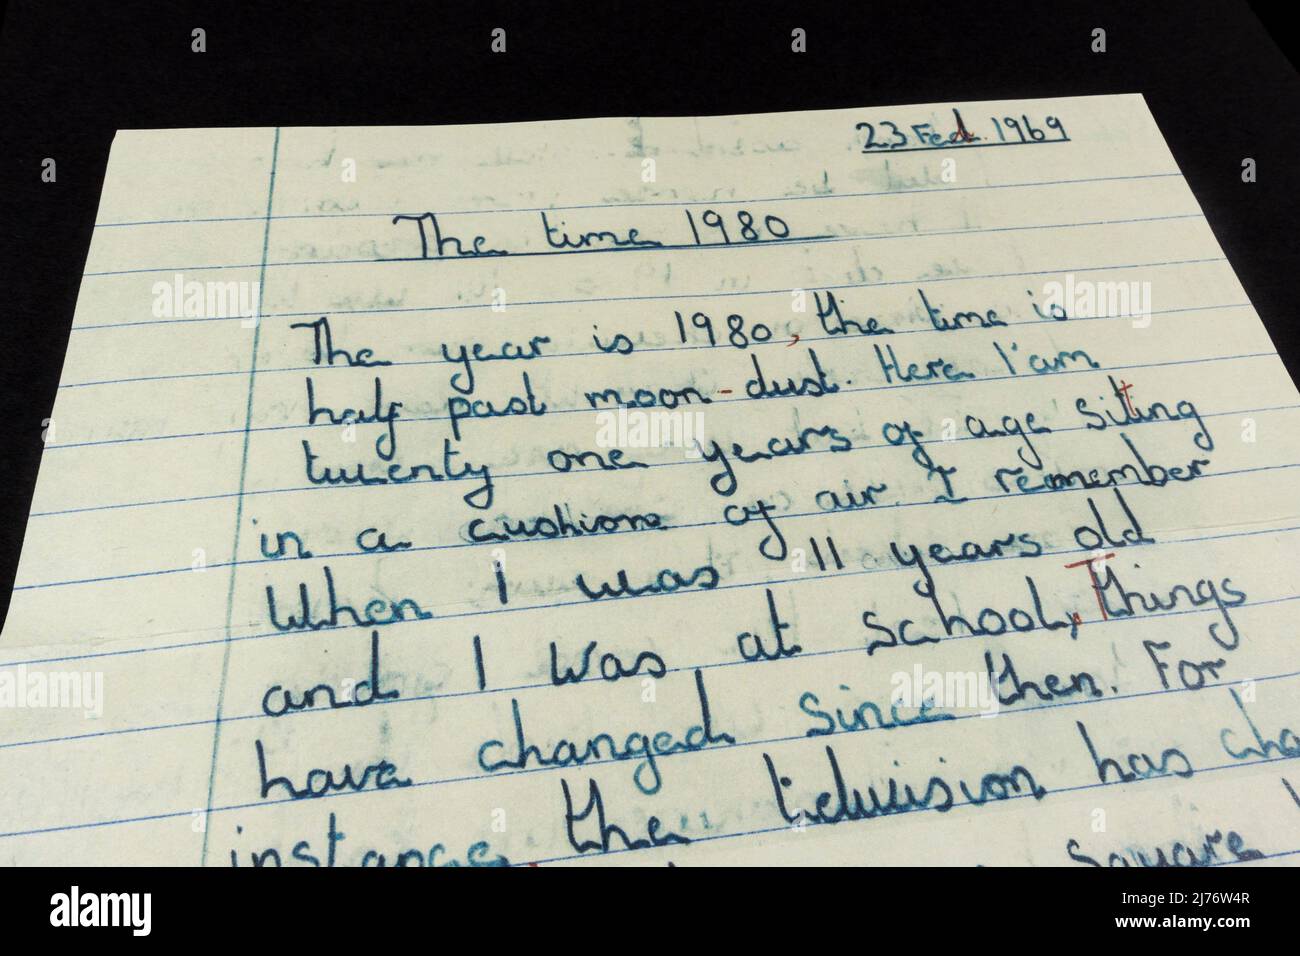 Un essai 'The Time 1980' par un enfant de l'école primaire regardant la technologie dans l'avenir (écrit en 1969), réplique thème des années 1960 souvenirs. Banque D'Images